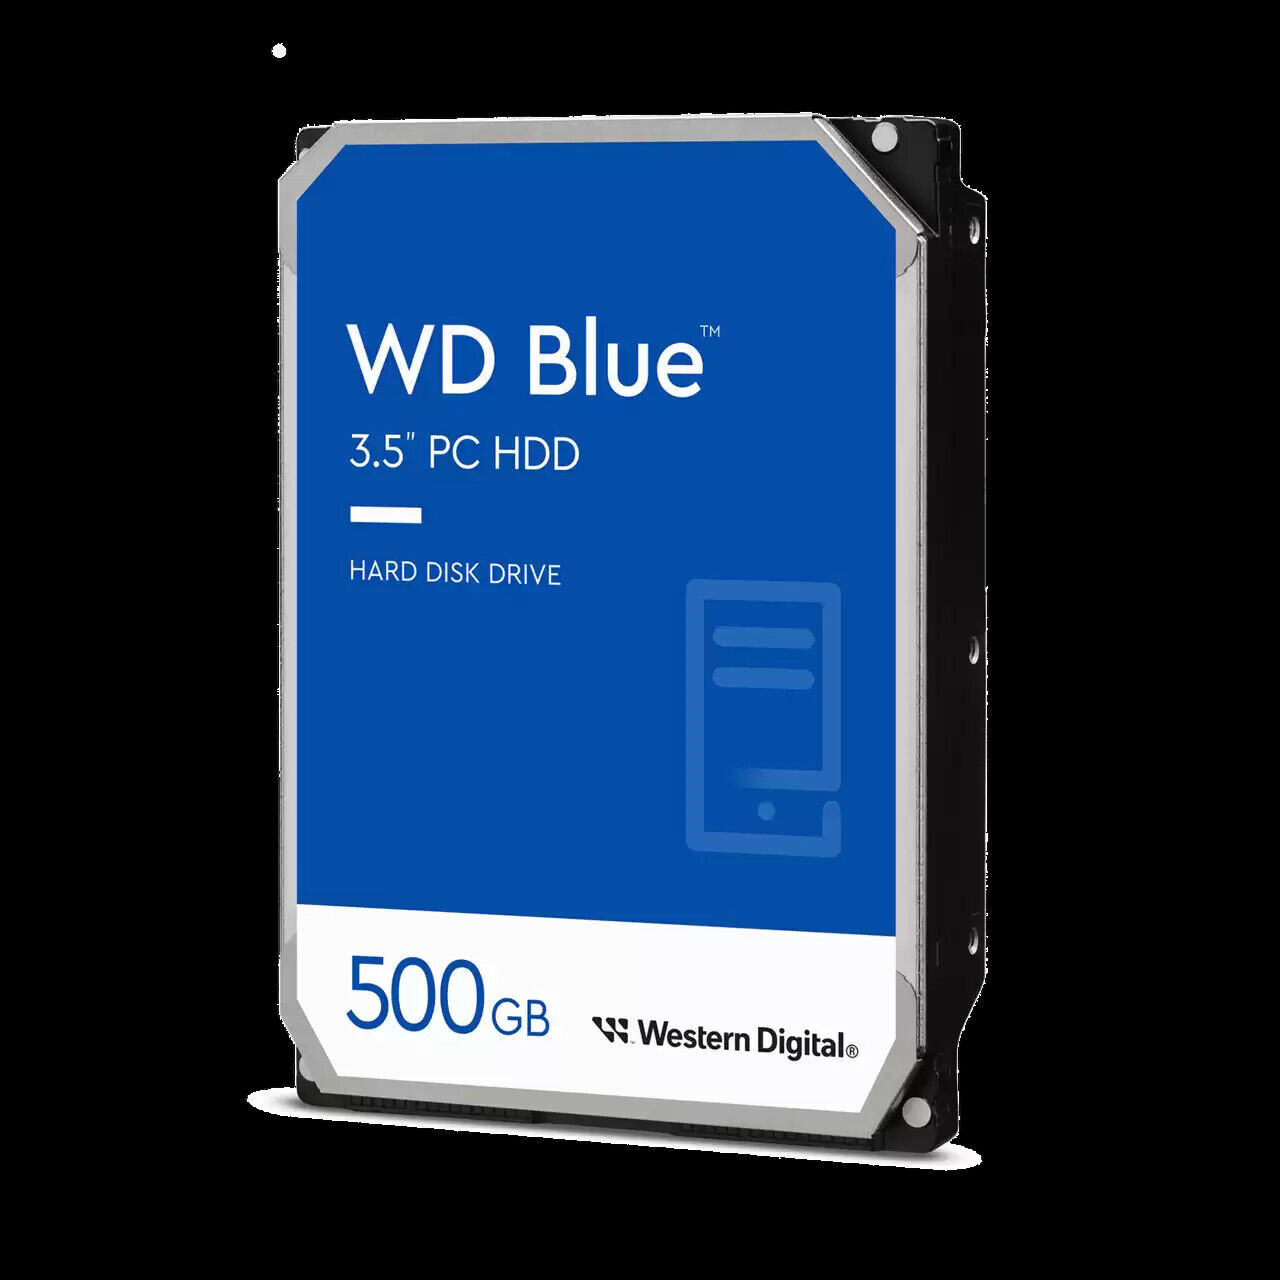 Western Digital 500GB WD Blue PC Desktop 3.5'' Internal CMR HDD - WD5000AZLX